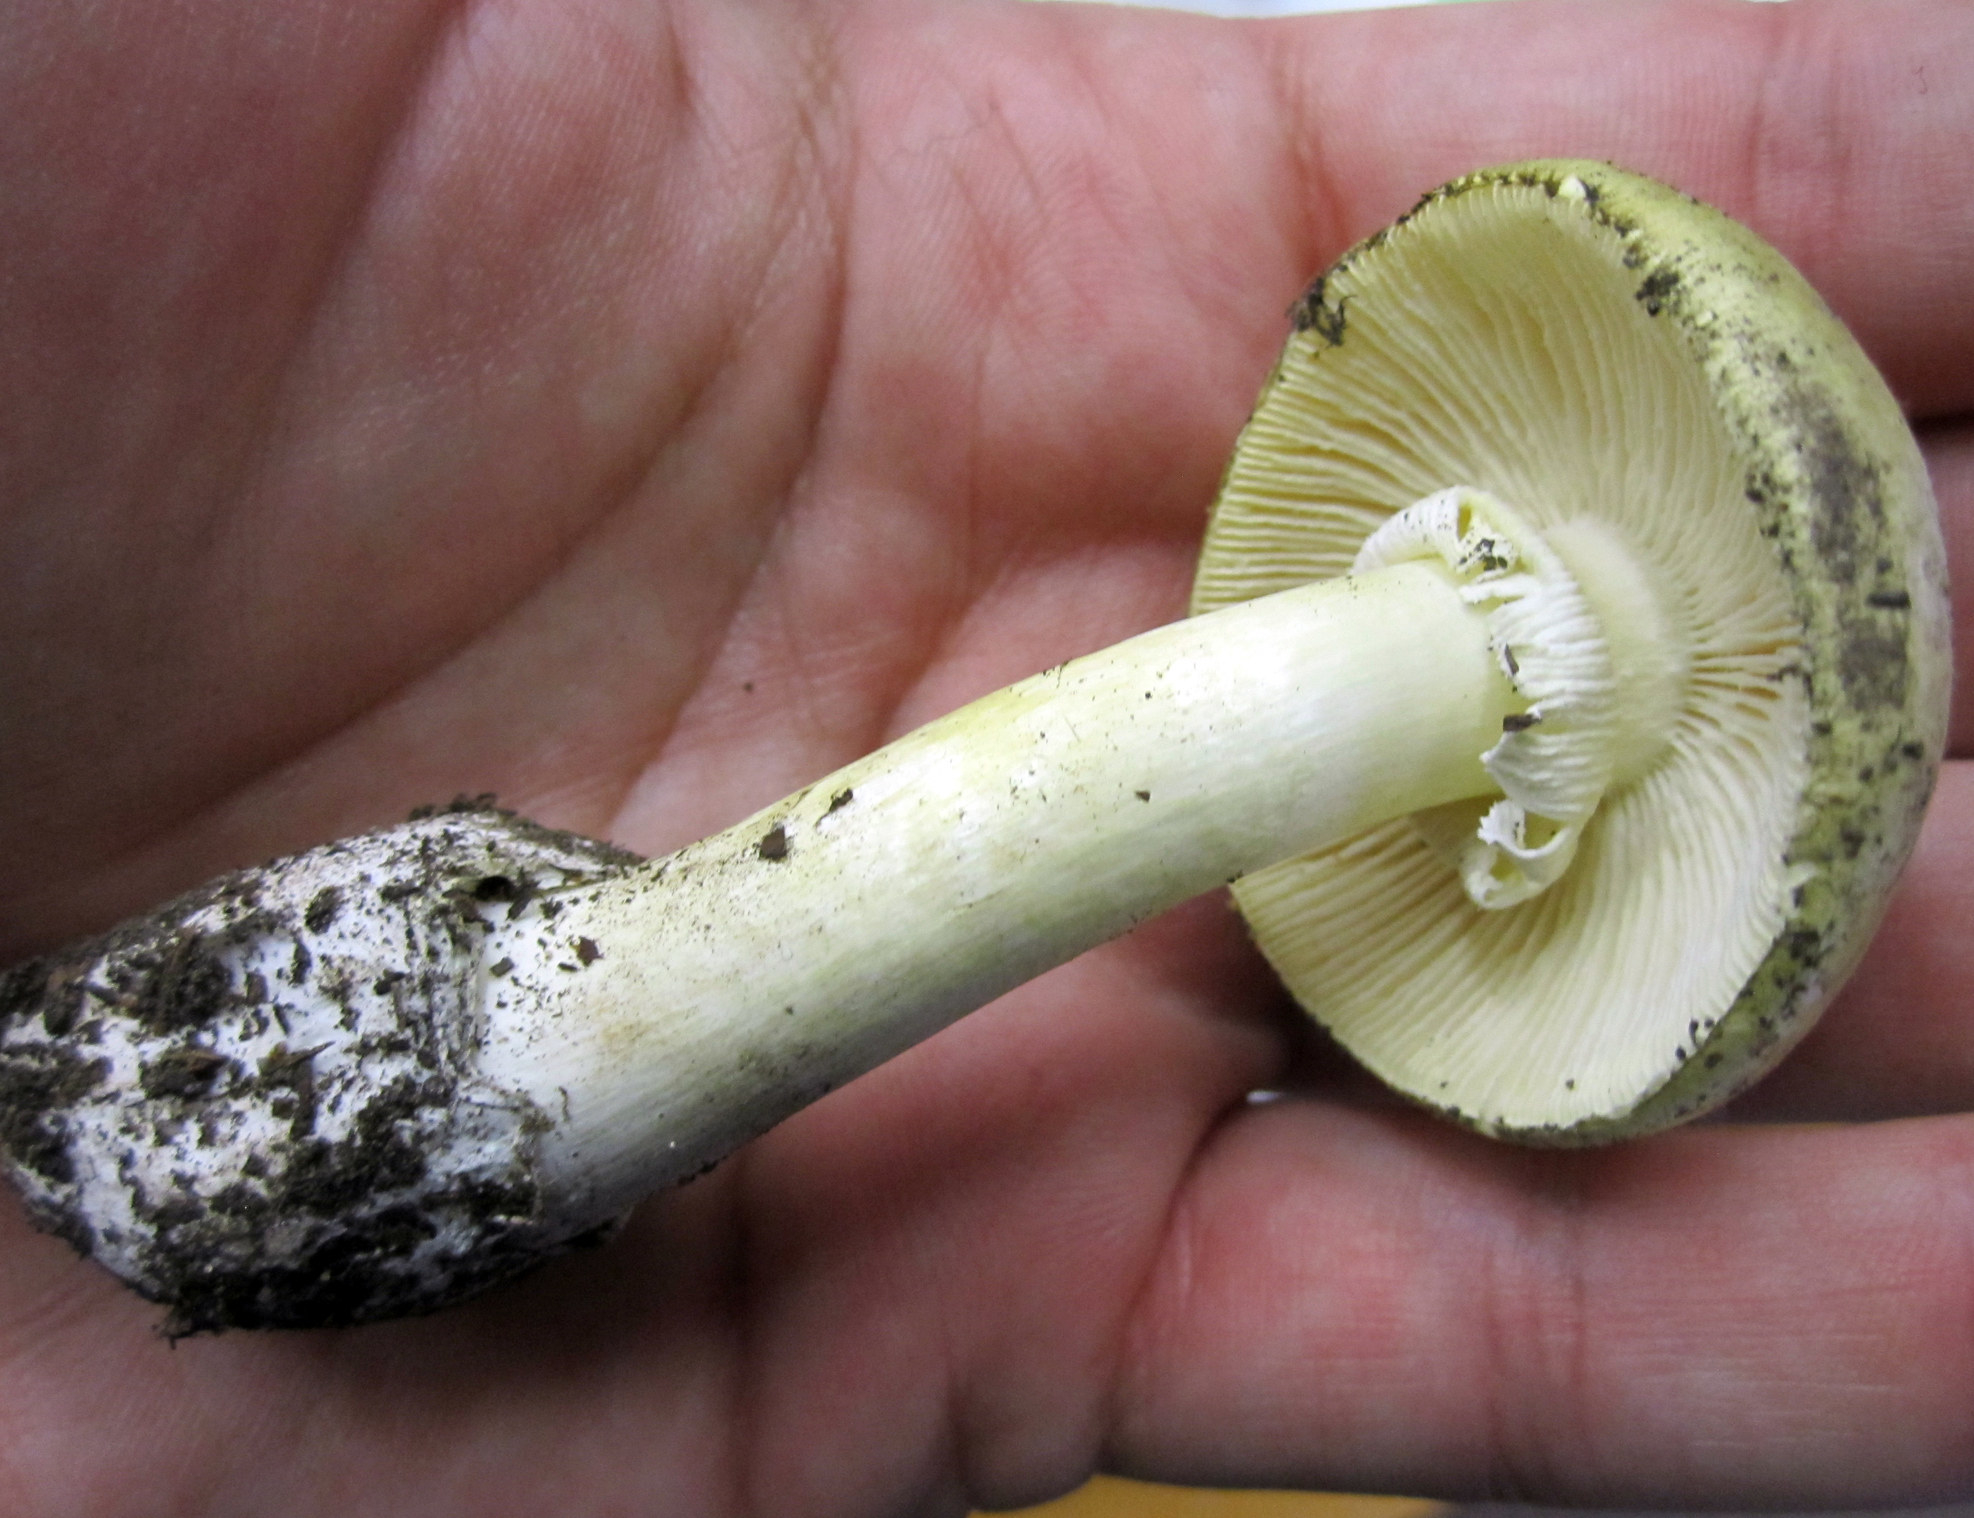 Deadly Destroying Angel mushroom on a human palm